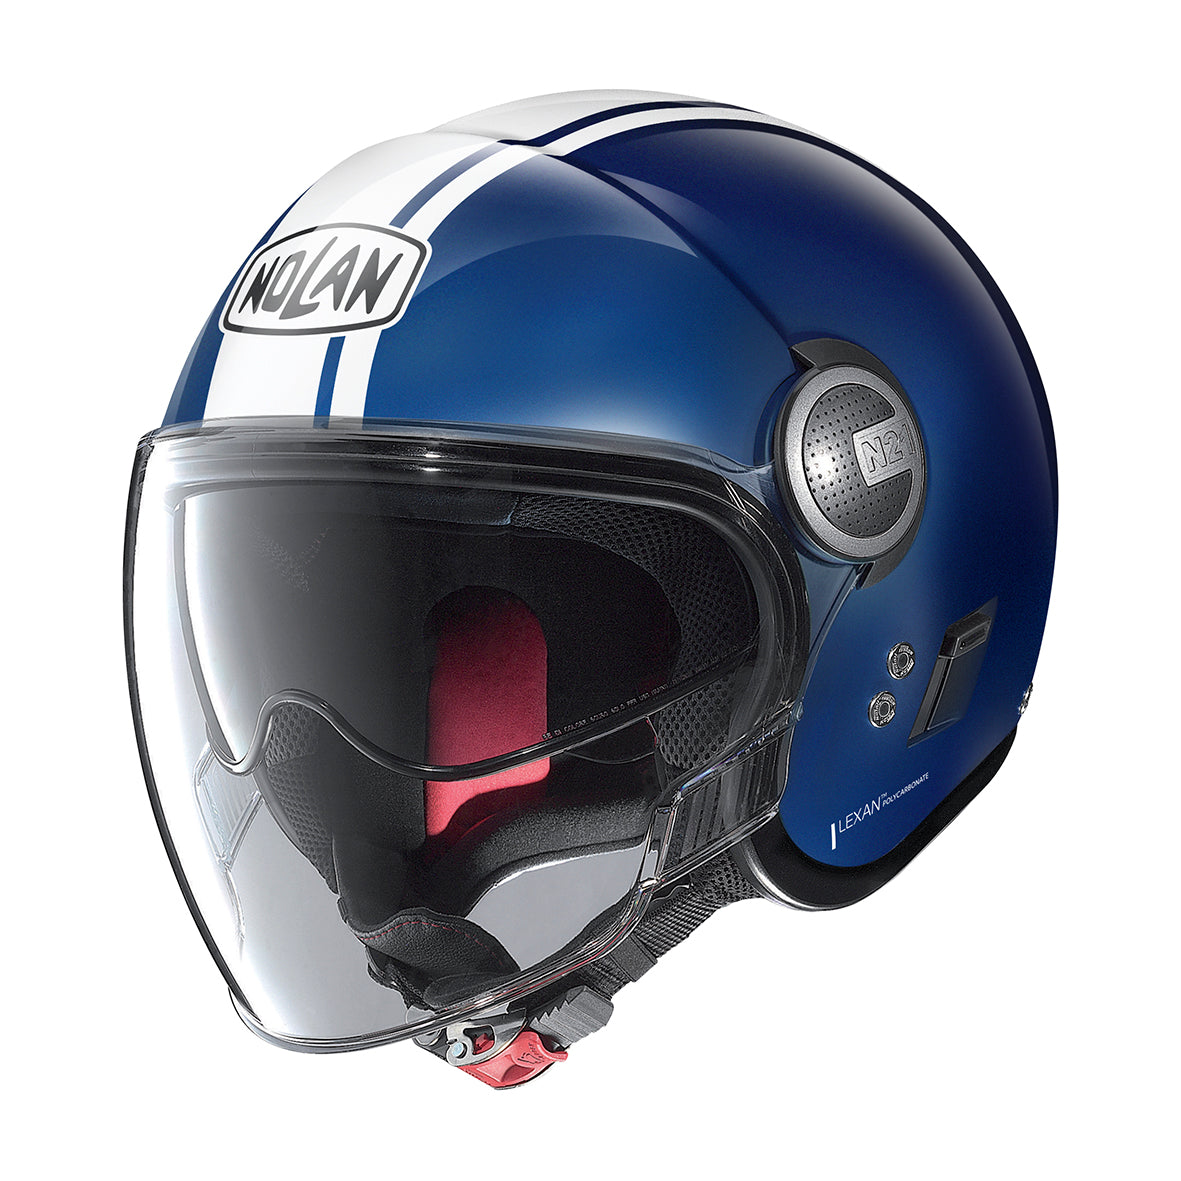 Nolan N21 Visor Dolce Vita 97 Caymen Blue Helmet